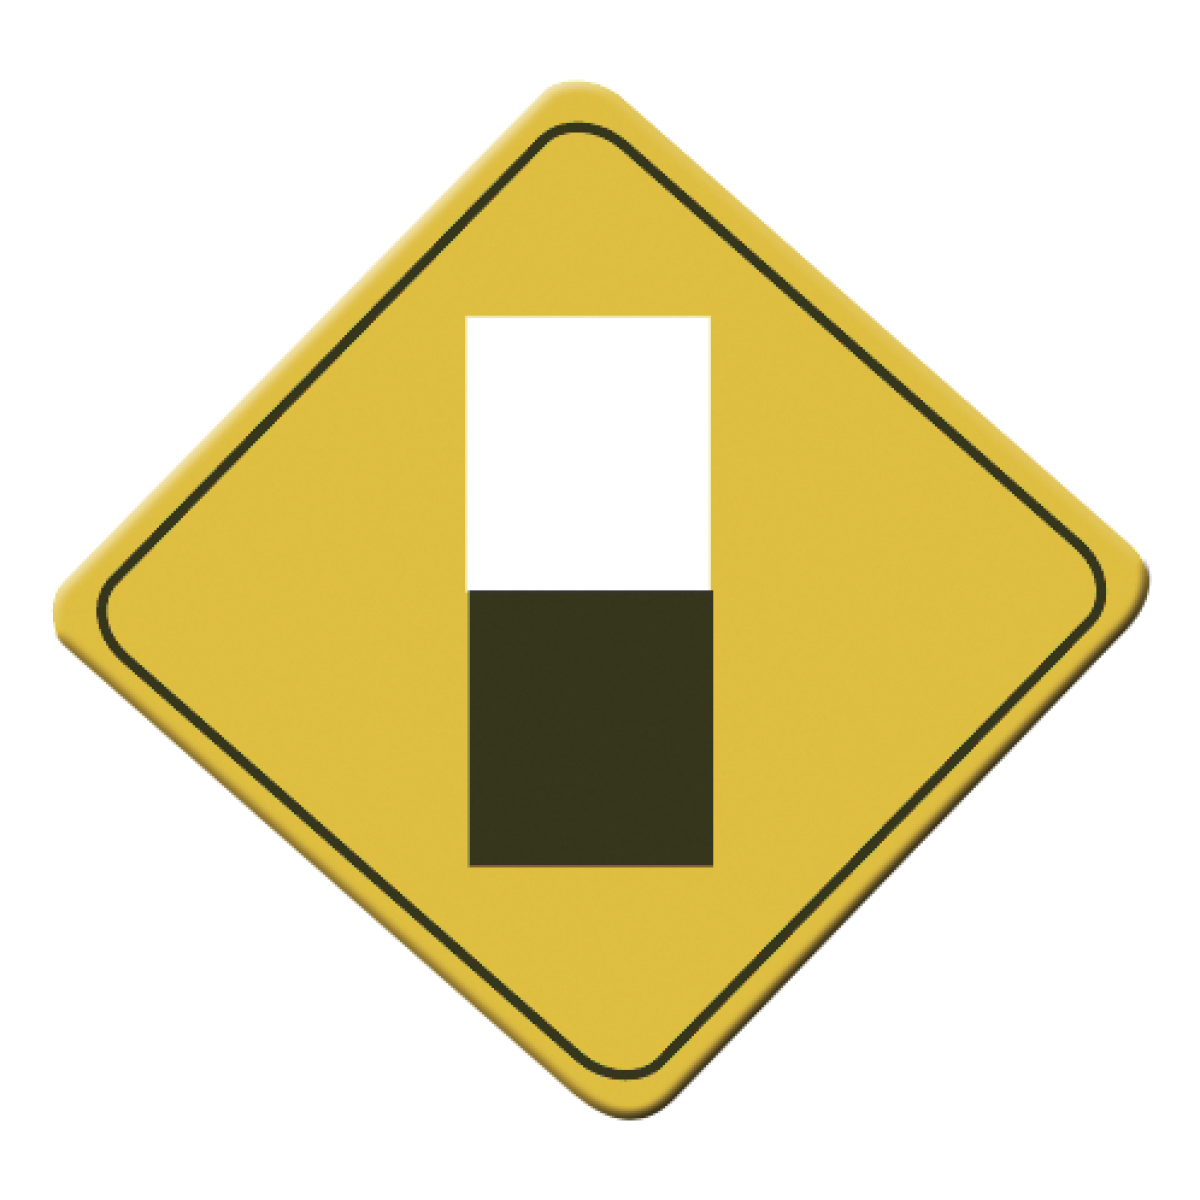 La Señal SP-27 Termina pavimento indica el inicio de caminos de terracería o irregulares. Permite tomar precauciones a los conductores.